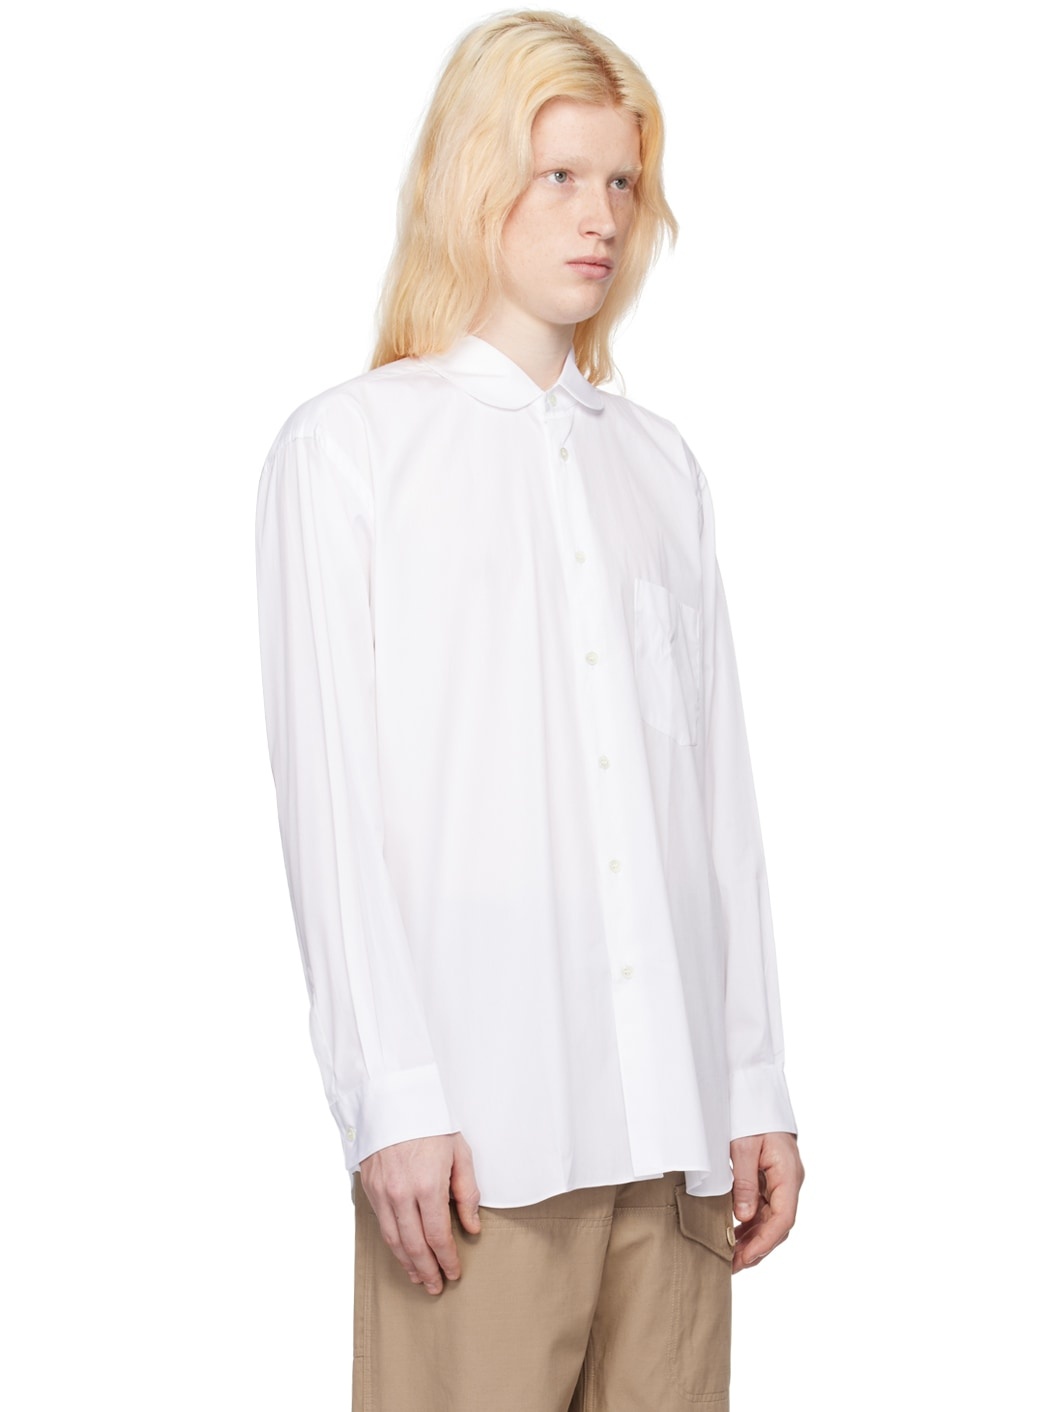 White Peter Pan Collar Shirt - 2